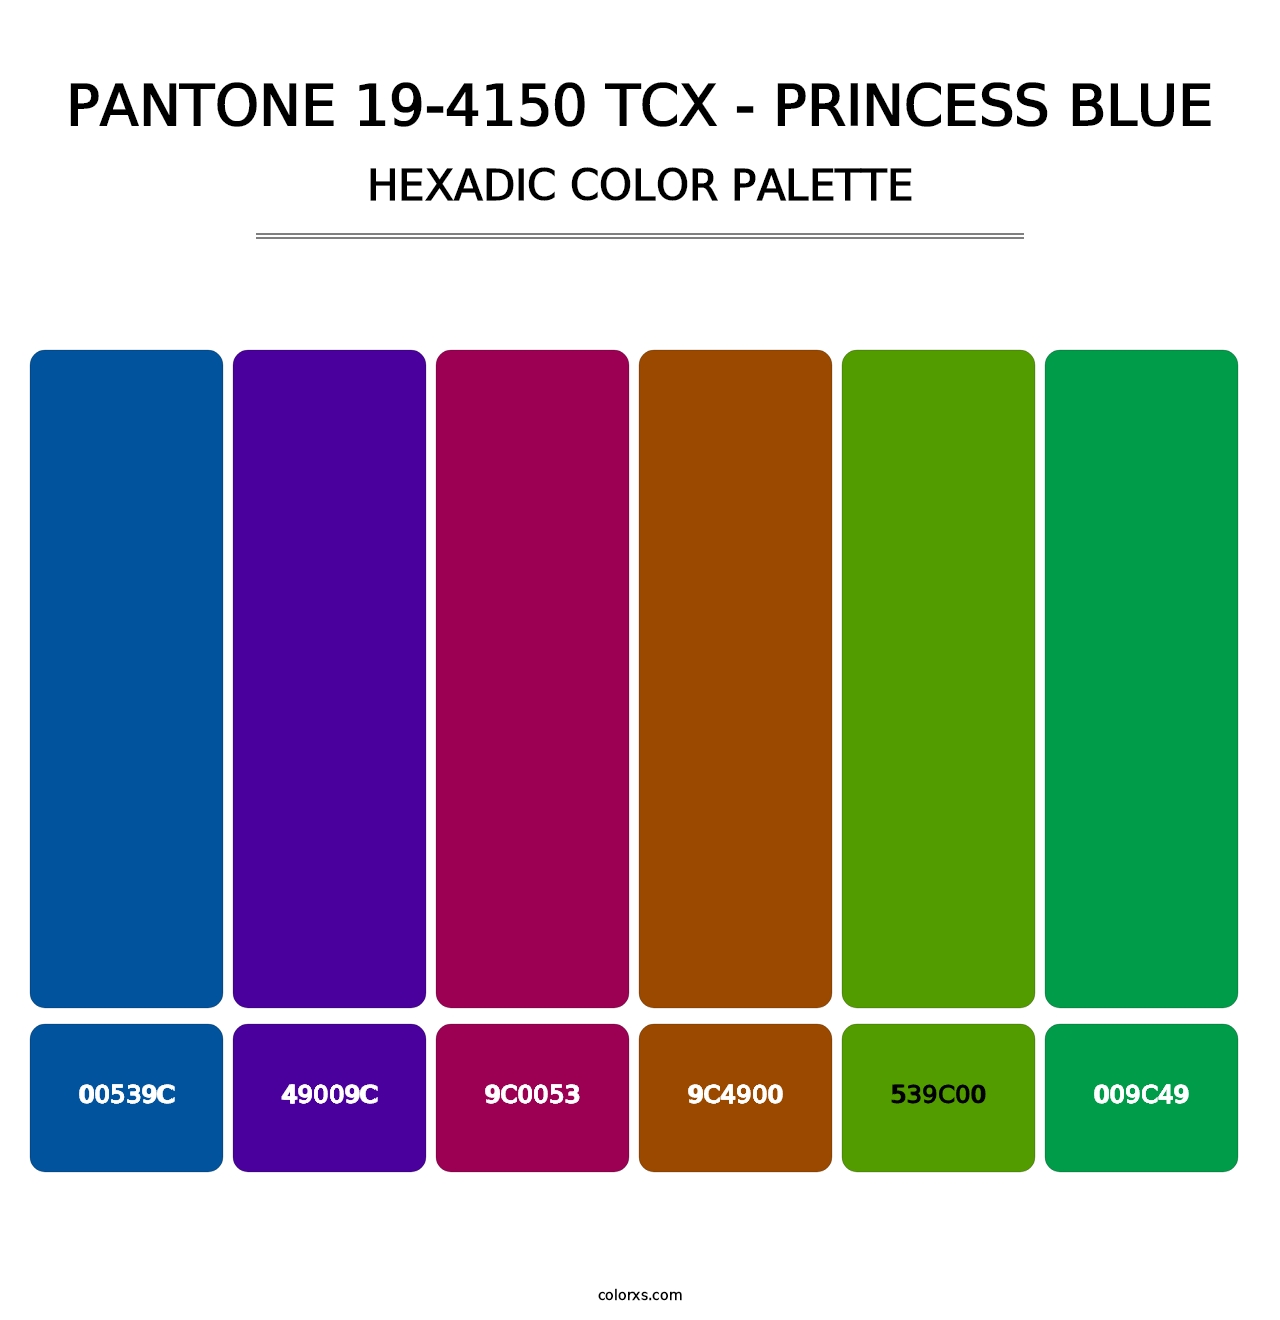 PANTONE 19-4150 TCX - Princess Blue - Hexadic Color Palette